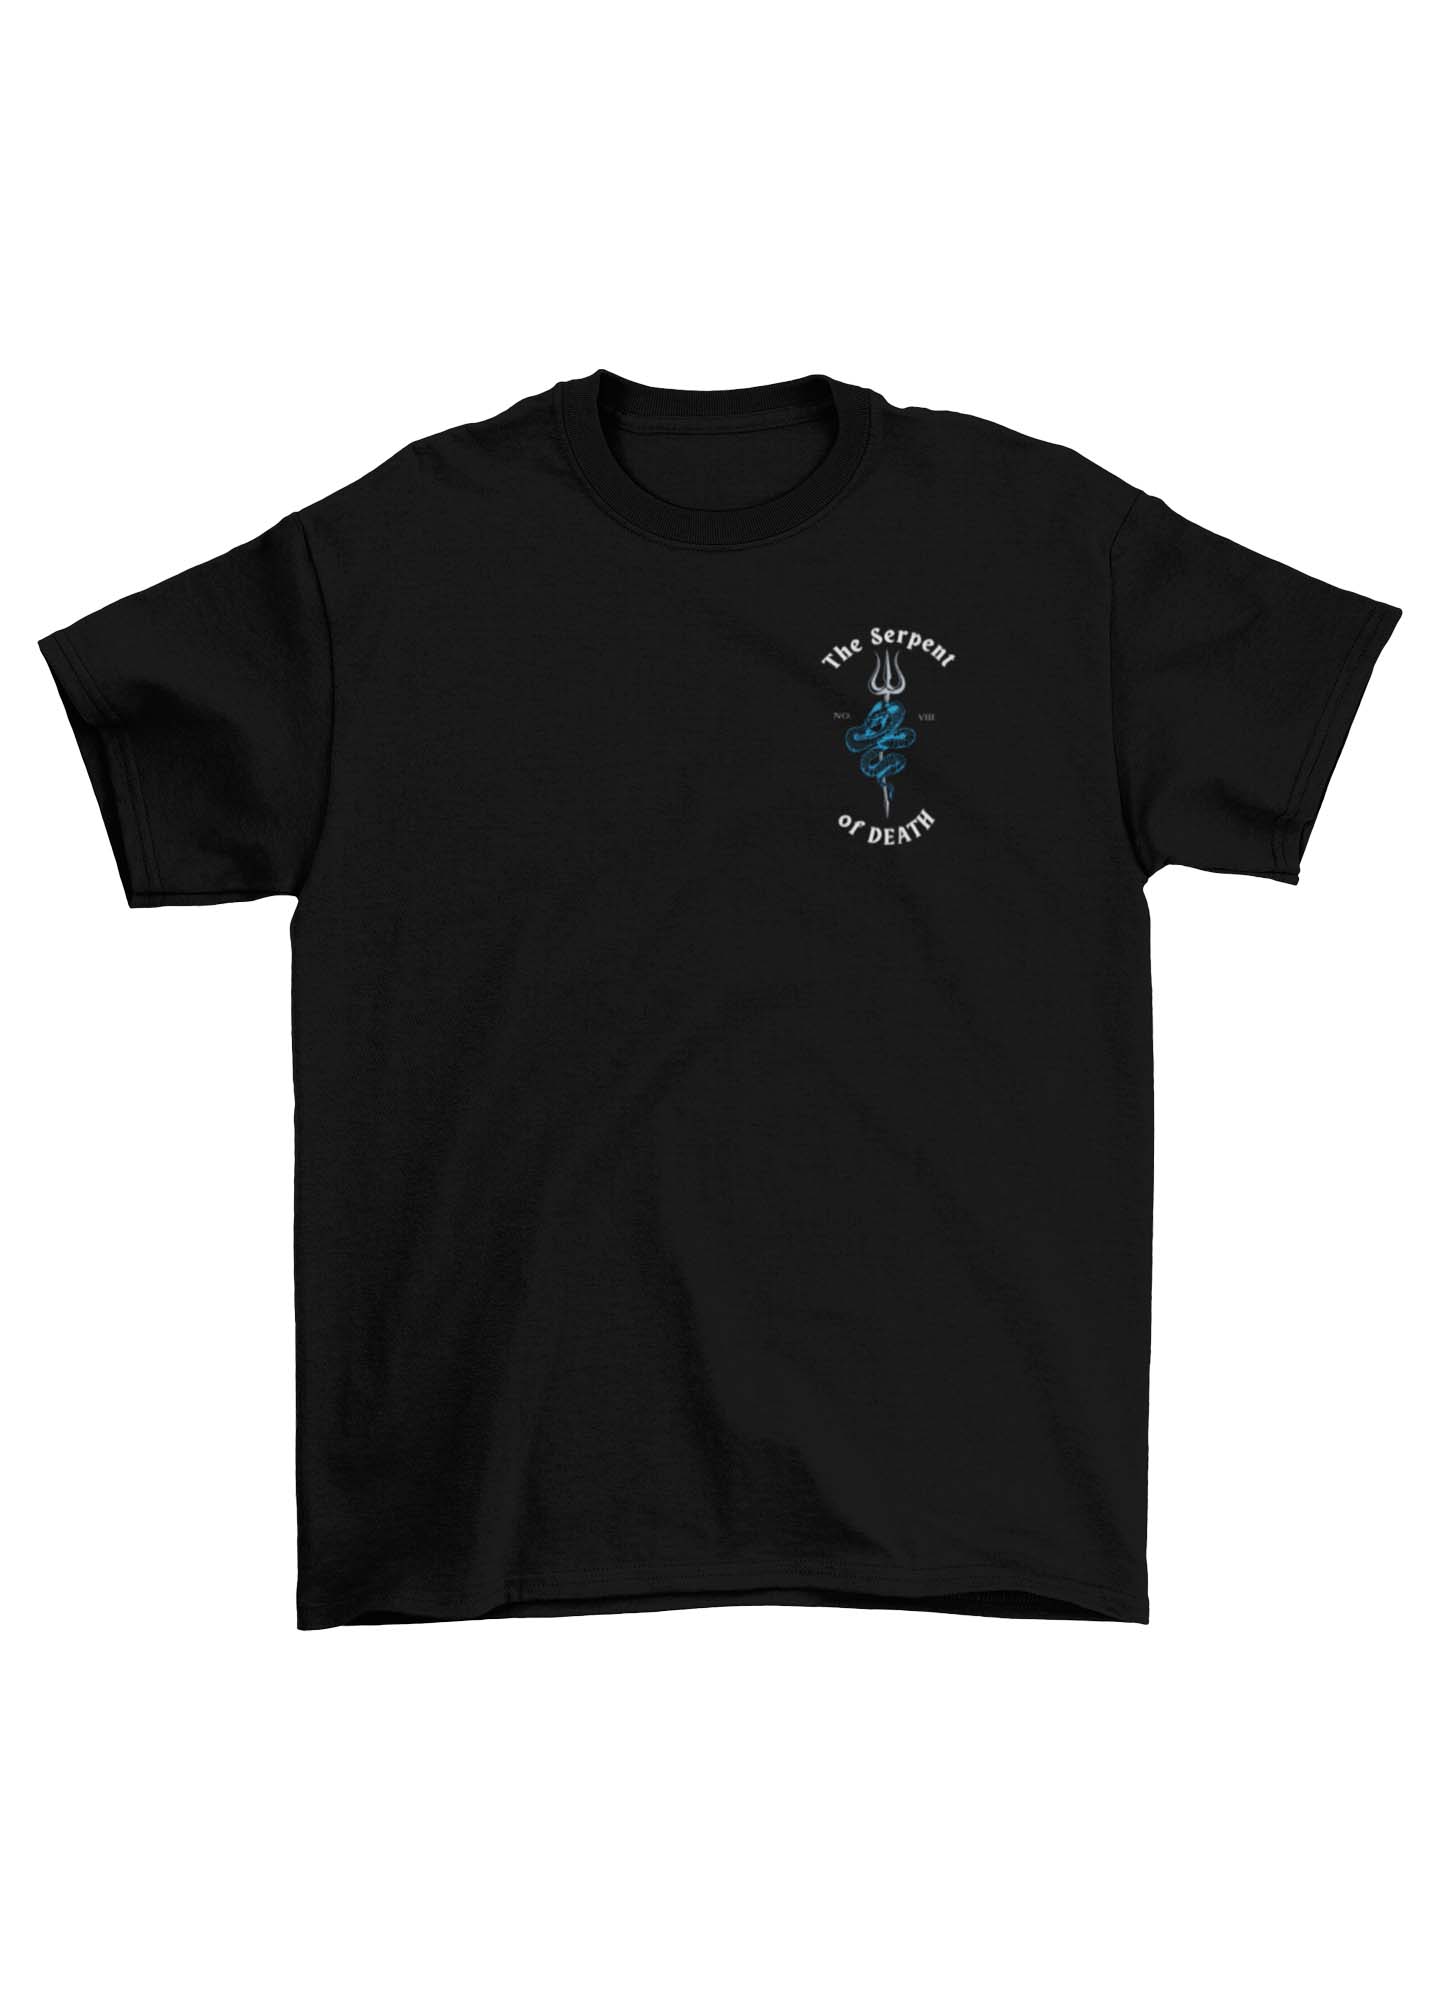 Serpent of Death T-Shirt (Reynolds Tee)